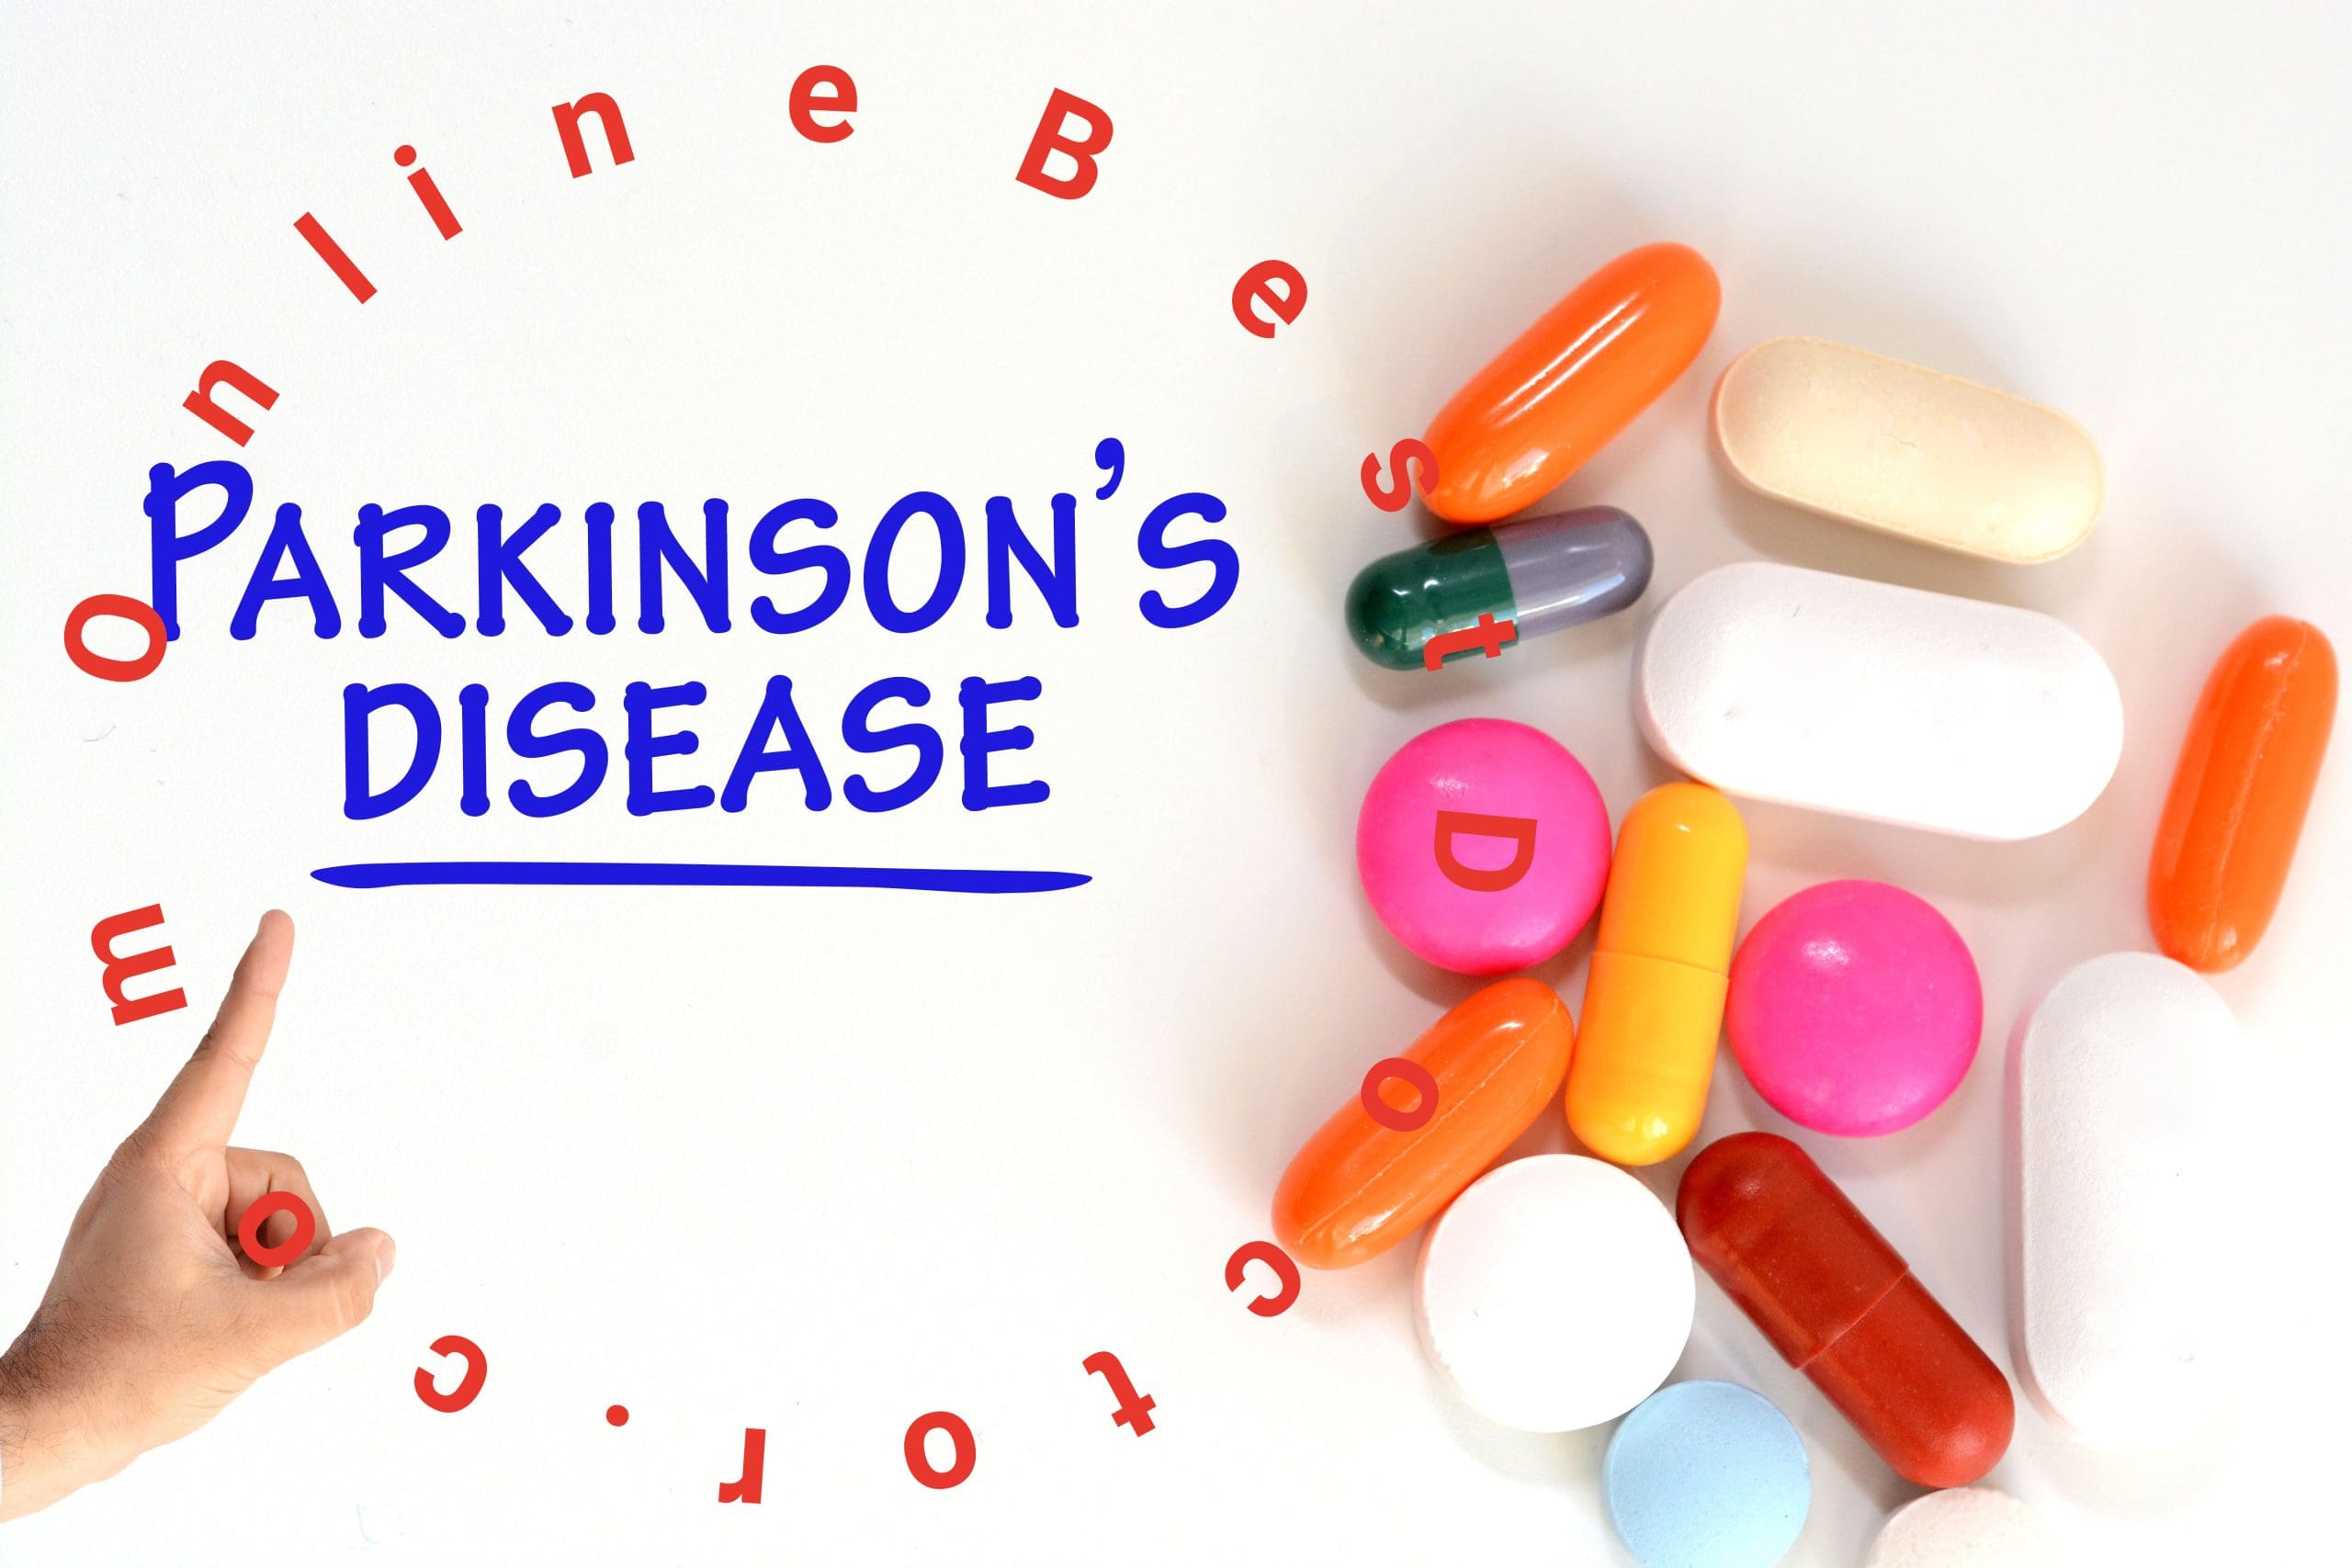 Parkinson's Disease Symptoms